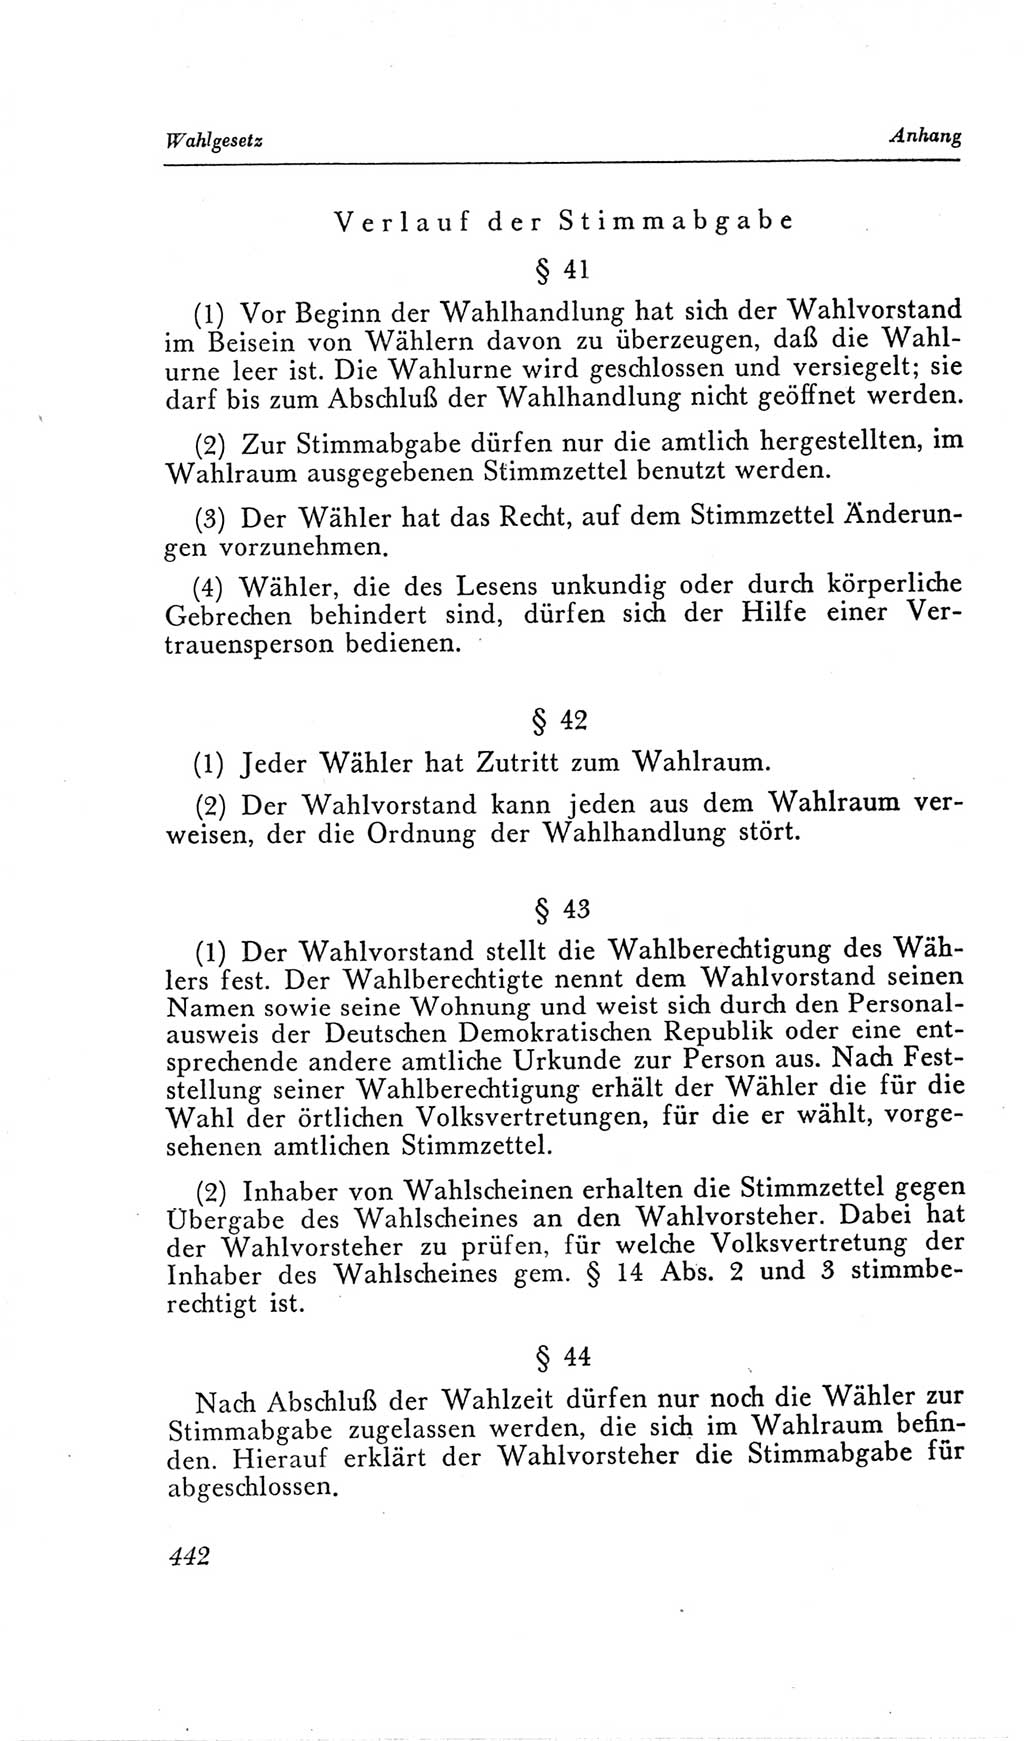 Handbuch der Volkskammer (VK) der Deutschen Demokratischen Republik (DDR), 2. Wahlperiode 1954-1958, Seite 442 (Hdb. VK. DDR, 2. WP. 1954-1958, S. 442)